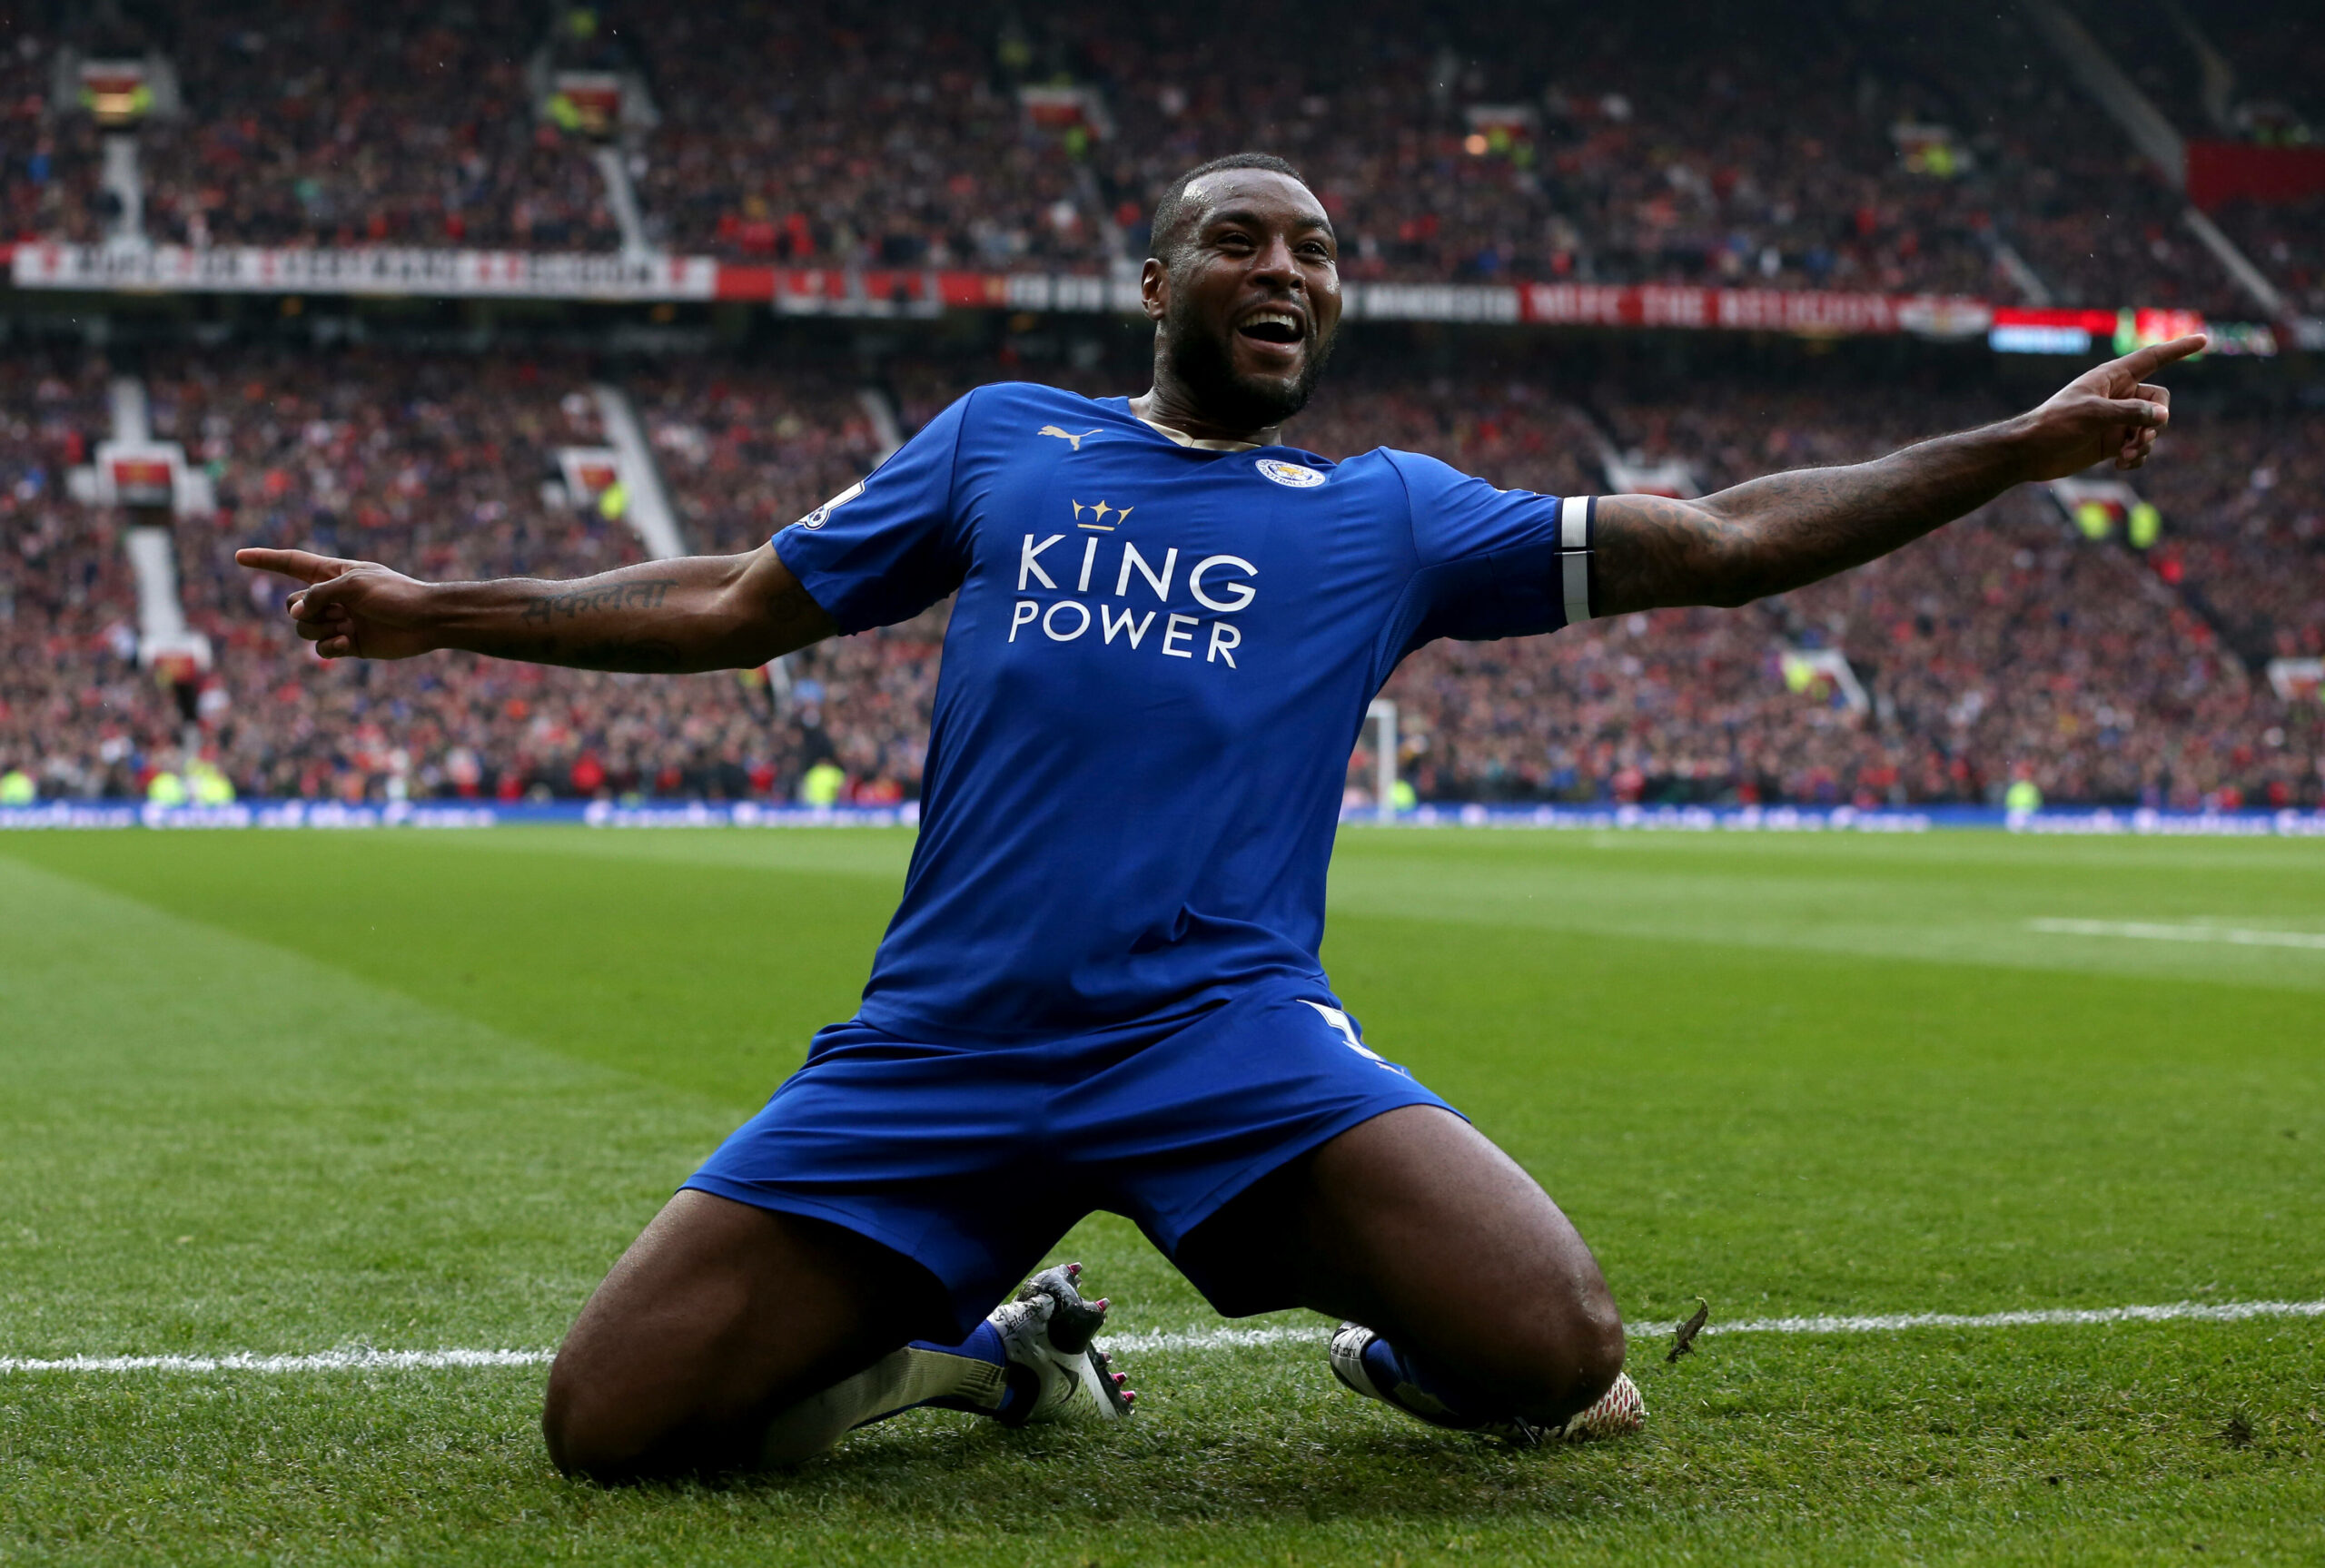 Leicester-Meisterschaftskapitän Morgan beendet seine Karriere